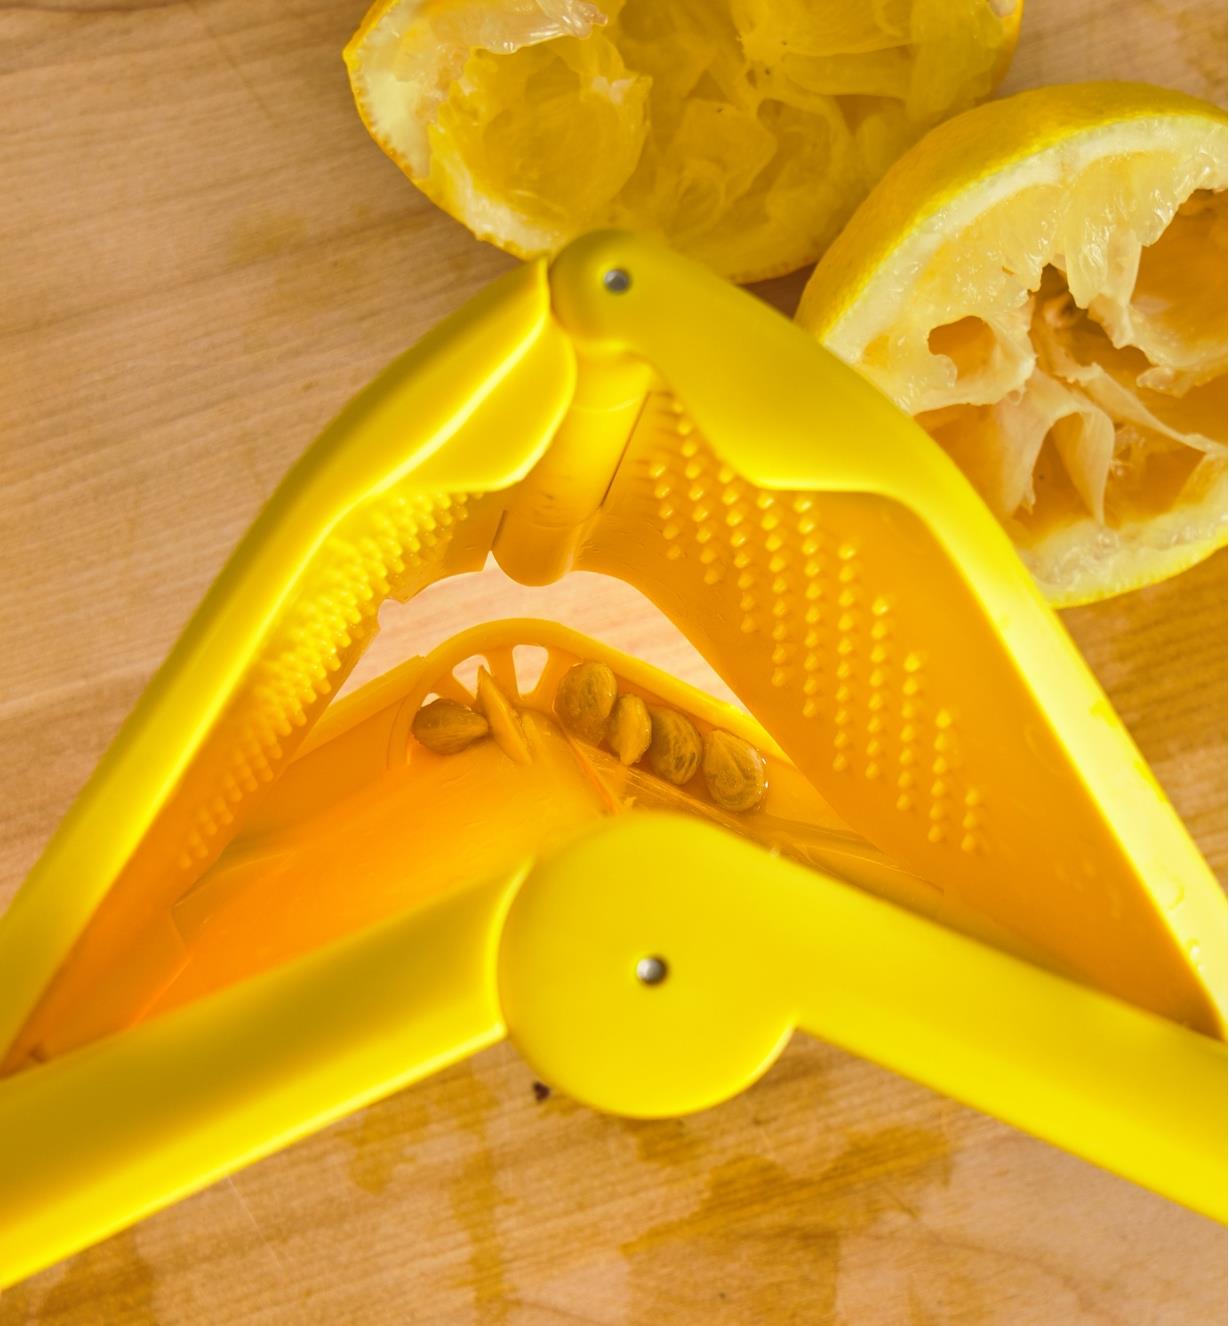 Pépins de citron se trouvant dans la passoire intégrée du presse-agrumes ergonomique